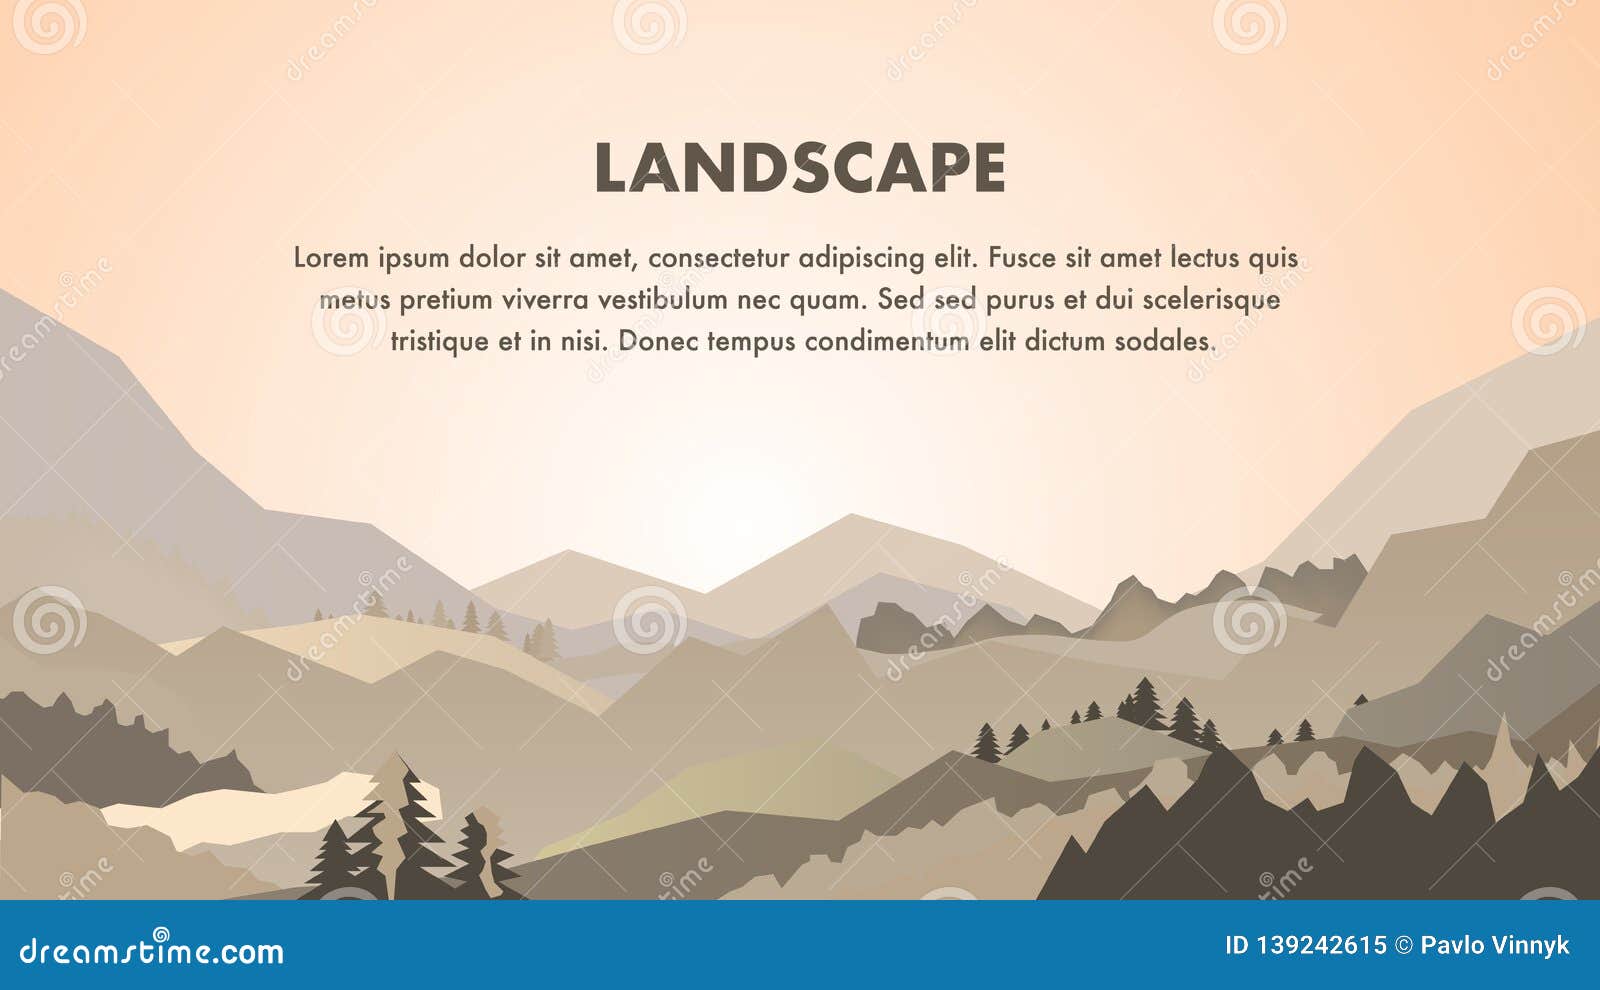  Mountain  Landscape Web Banner  Vector Template  Stock Vector 